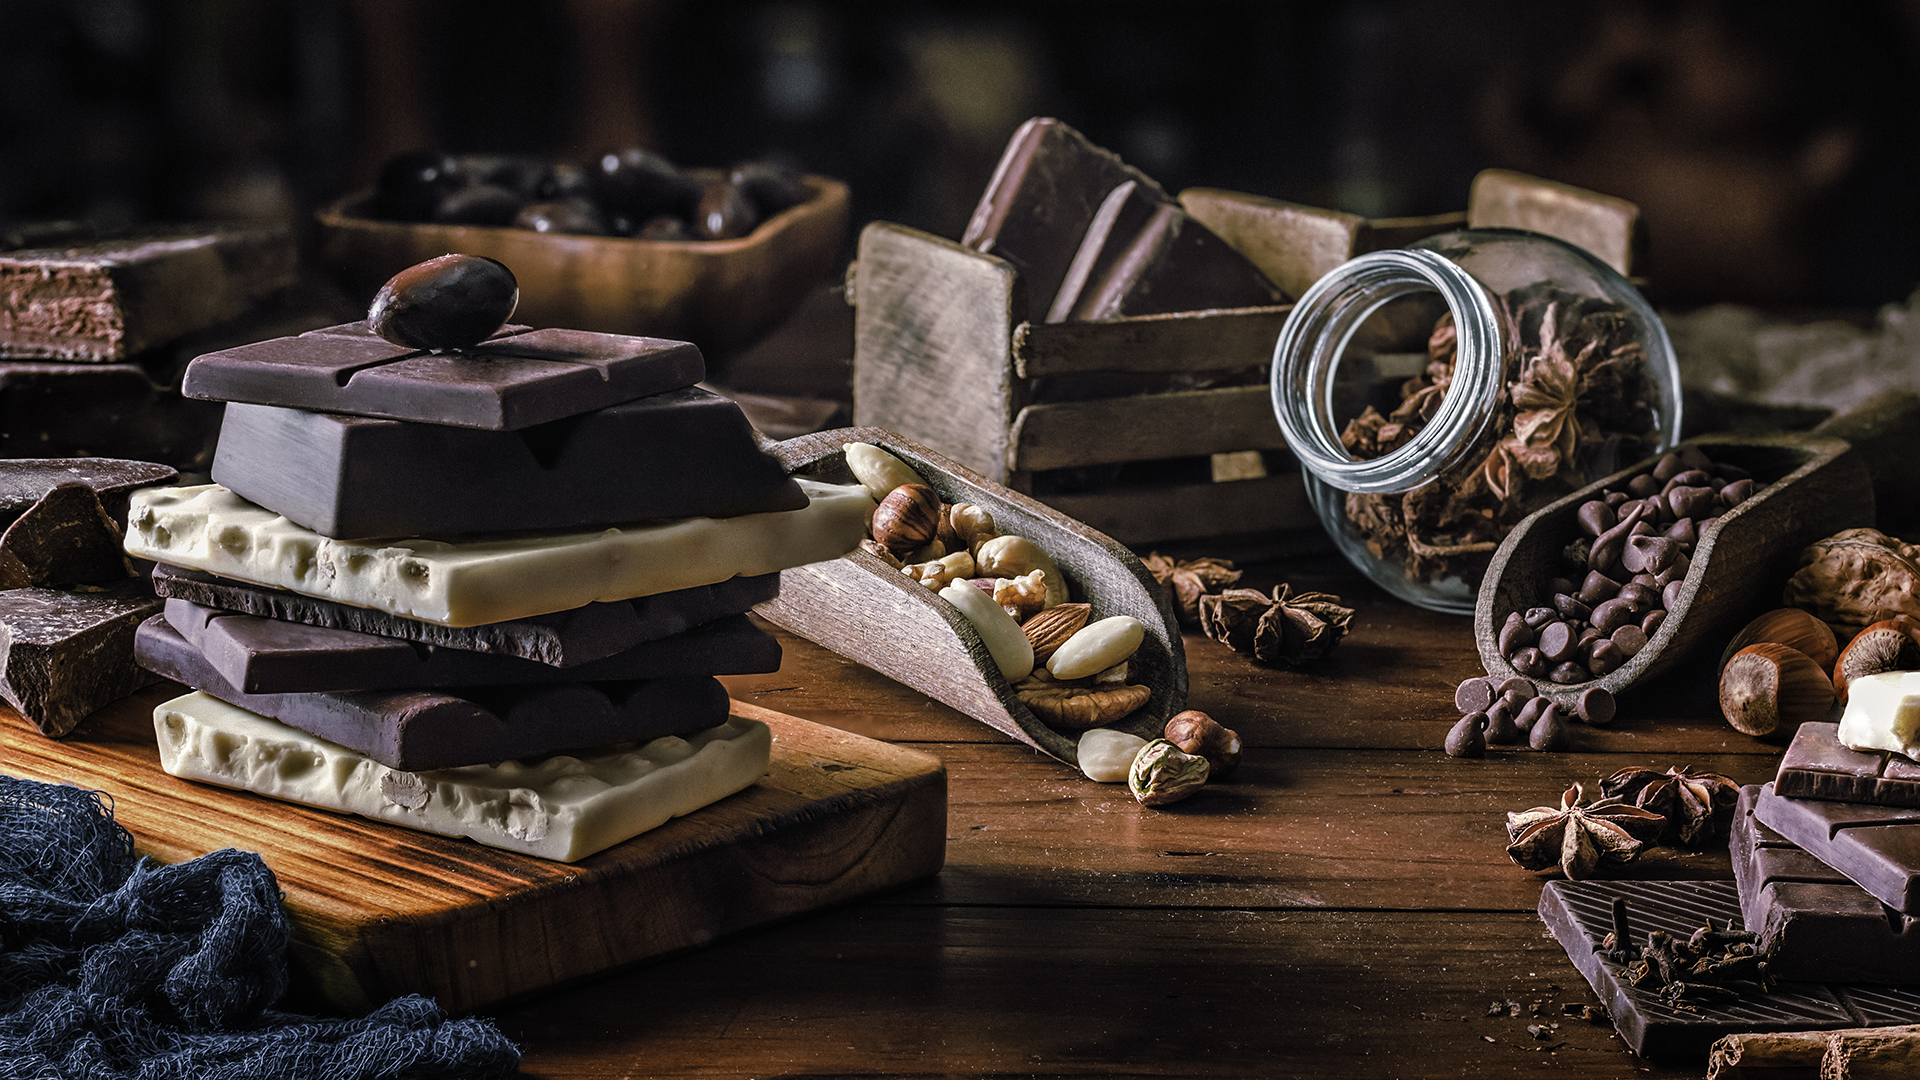 Los antioxidantes llamados flavonoles abundan en los granos de cacao que se usan para hacer chocolate. Cuanto más oscuro es el chocolate, más cacao, y potencialmente más flavonoles, contiene (Getty Images)